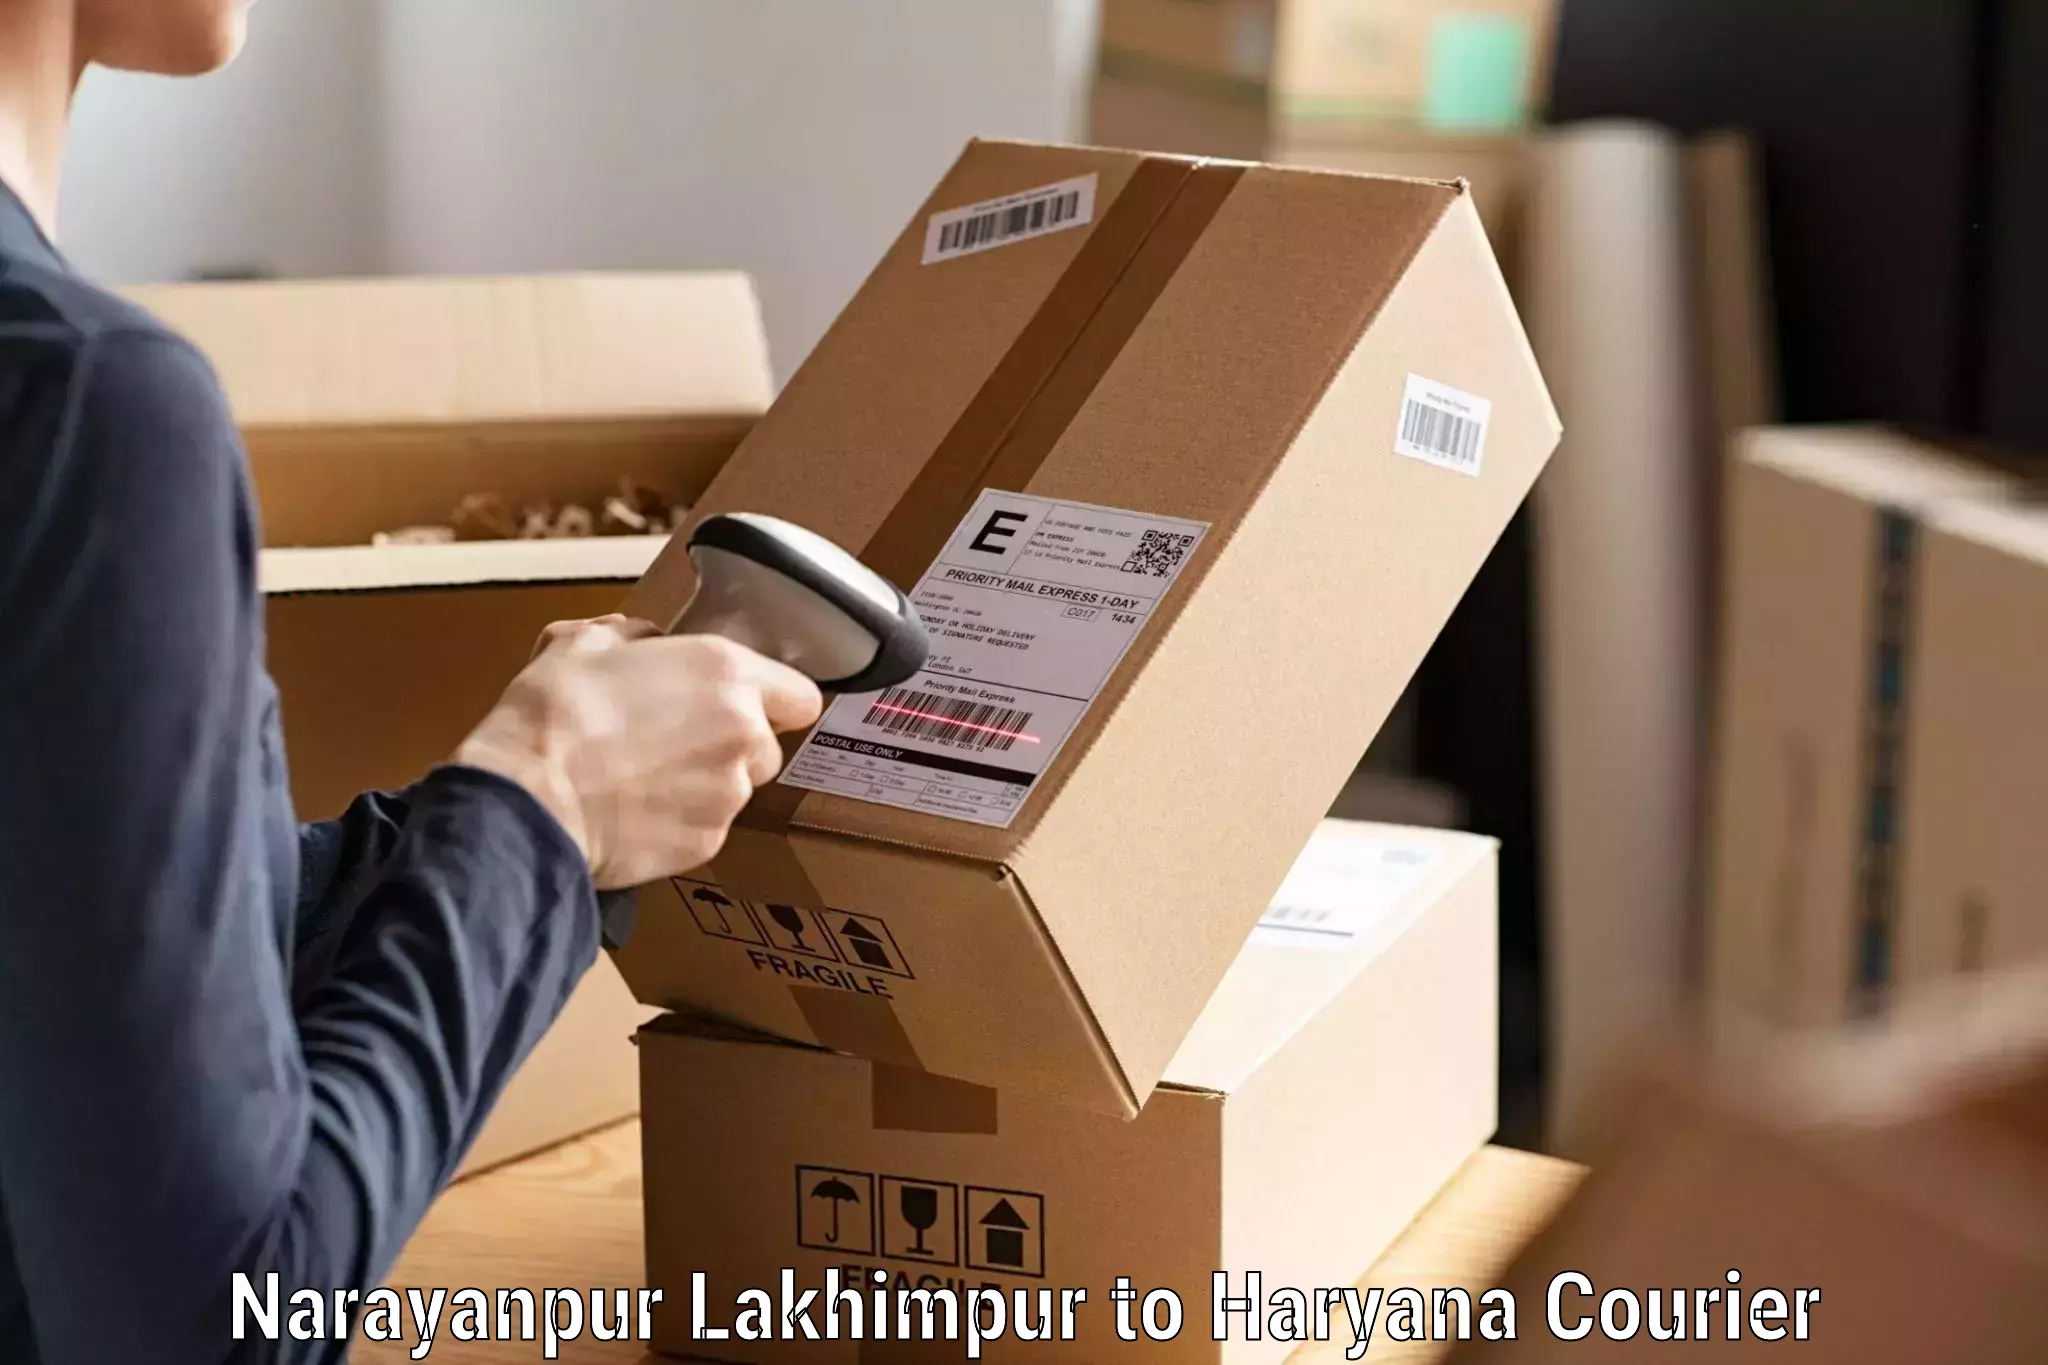 Efficient freight transportation Narayanpur Lakhimpur to Odhan